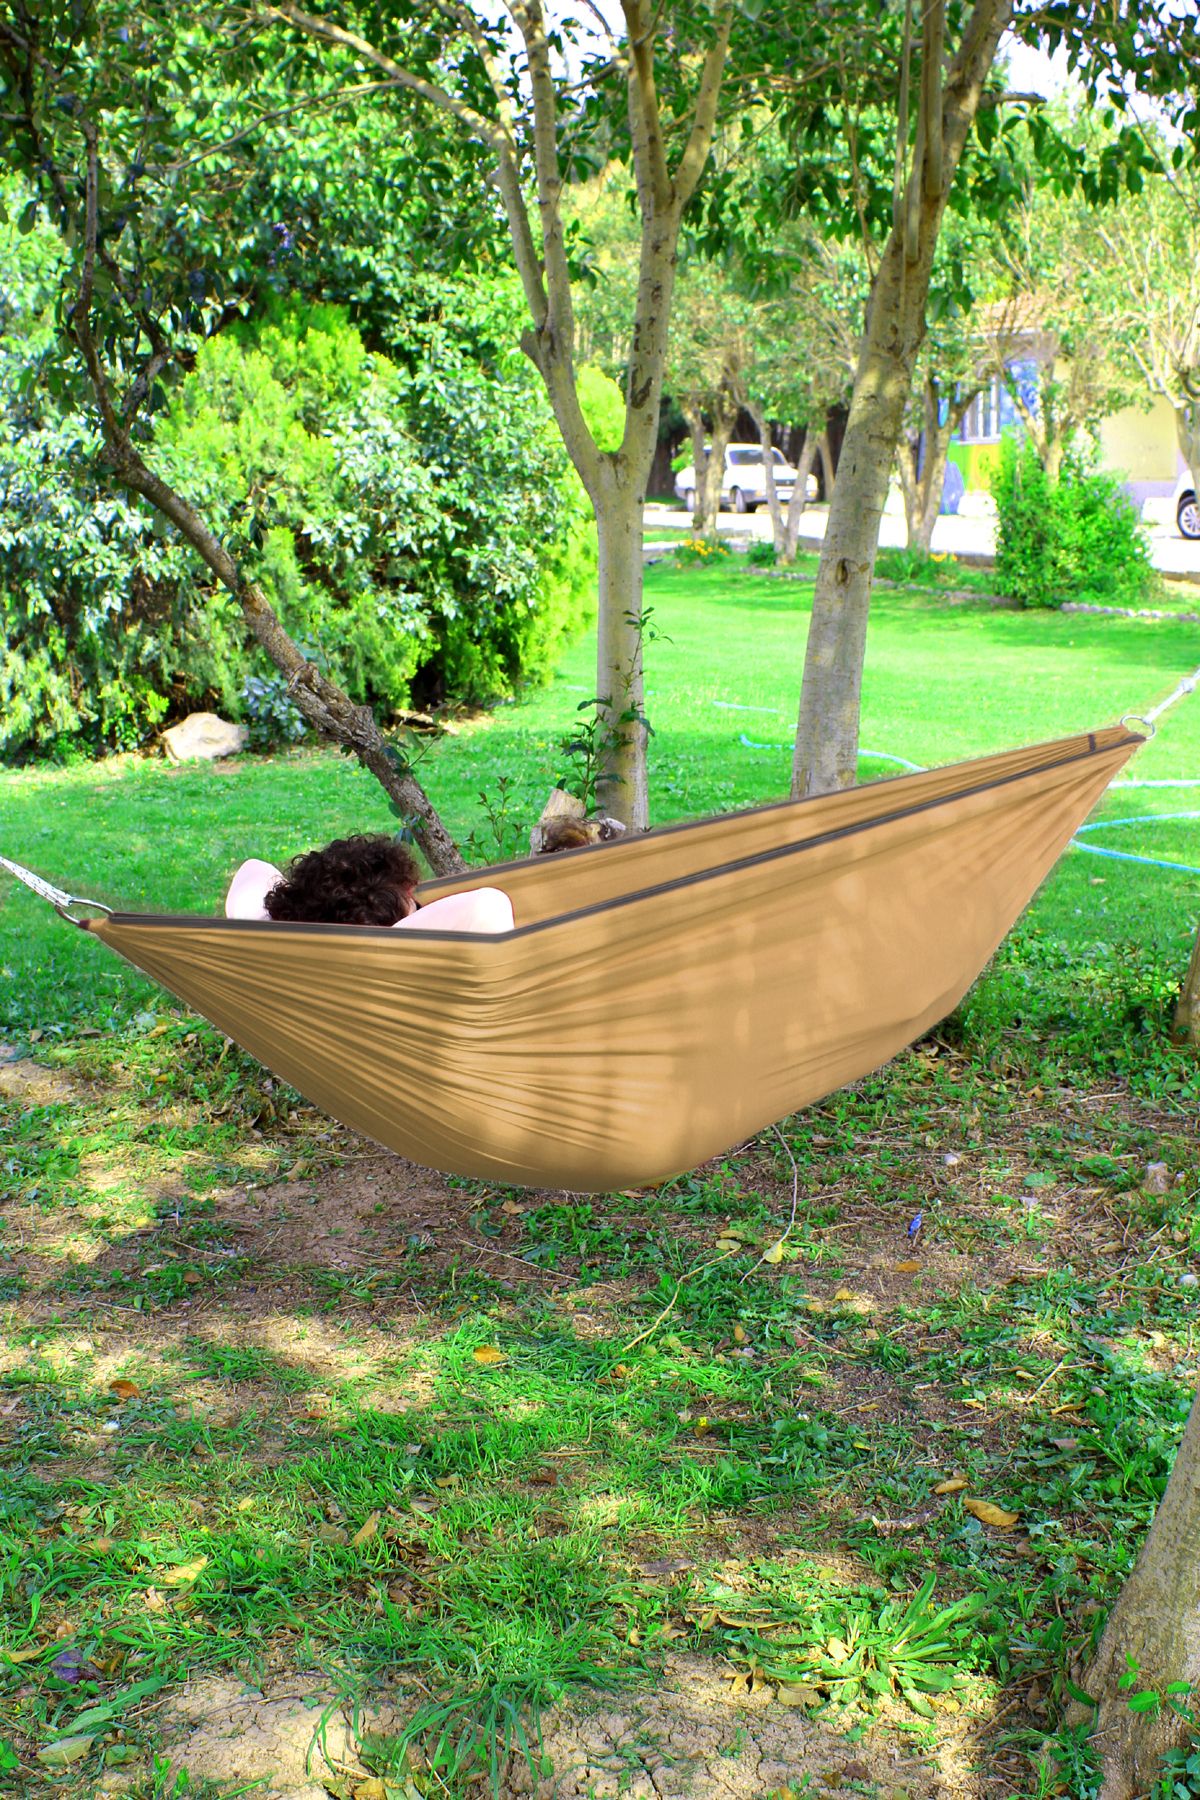 LERİS Kamp Hamağı Piknik Hamağı Bahçe Balkon Outdoor Pratik Kurulum Kamp Salıncak Hamak Yeşil